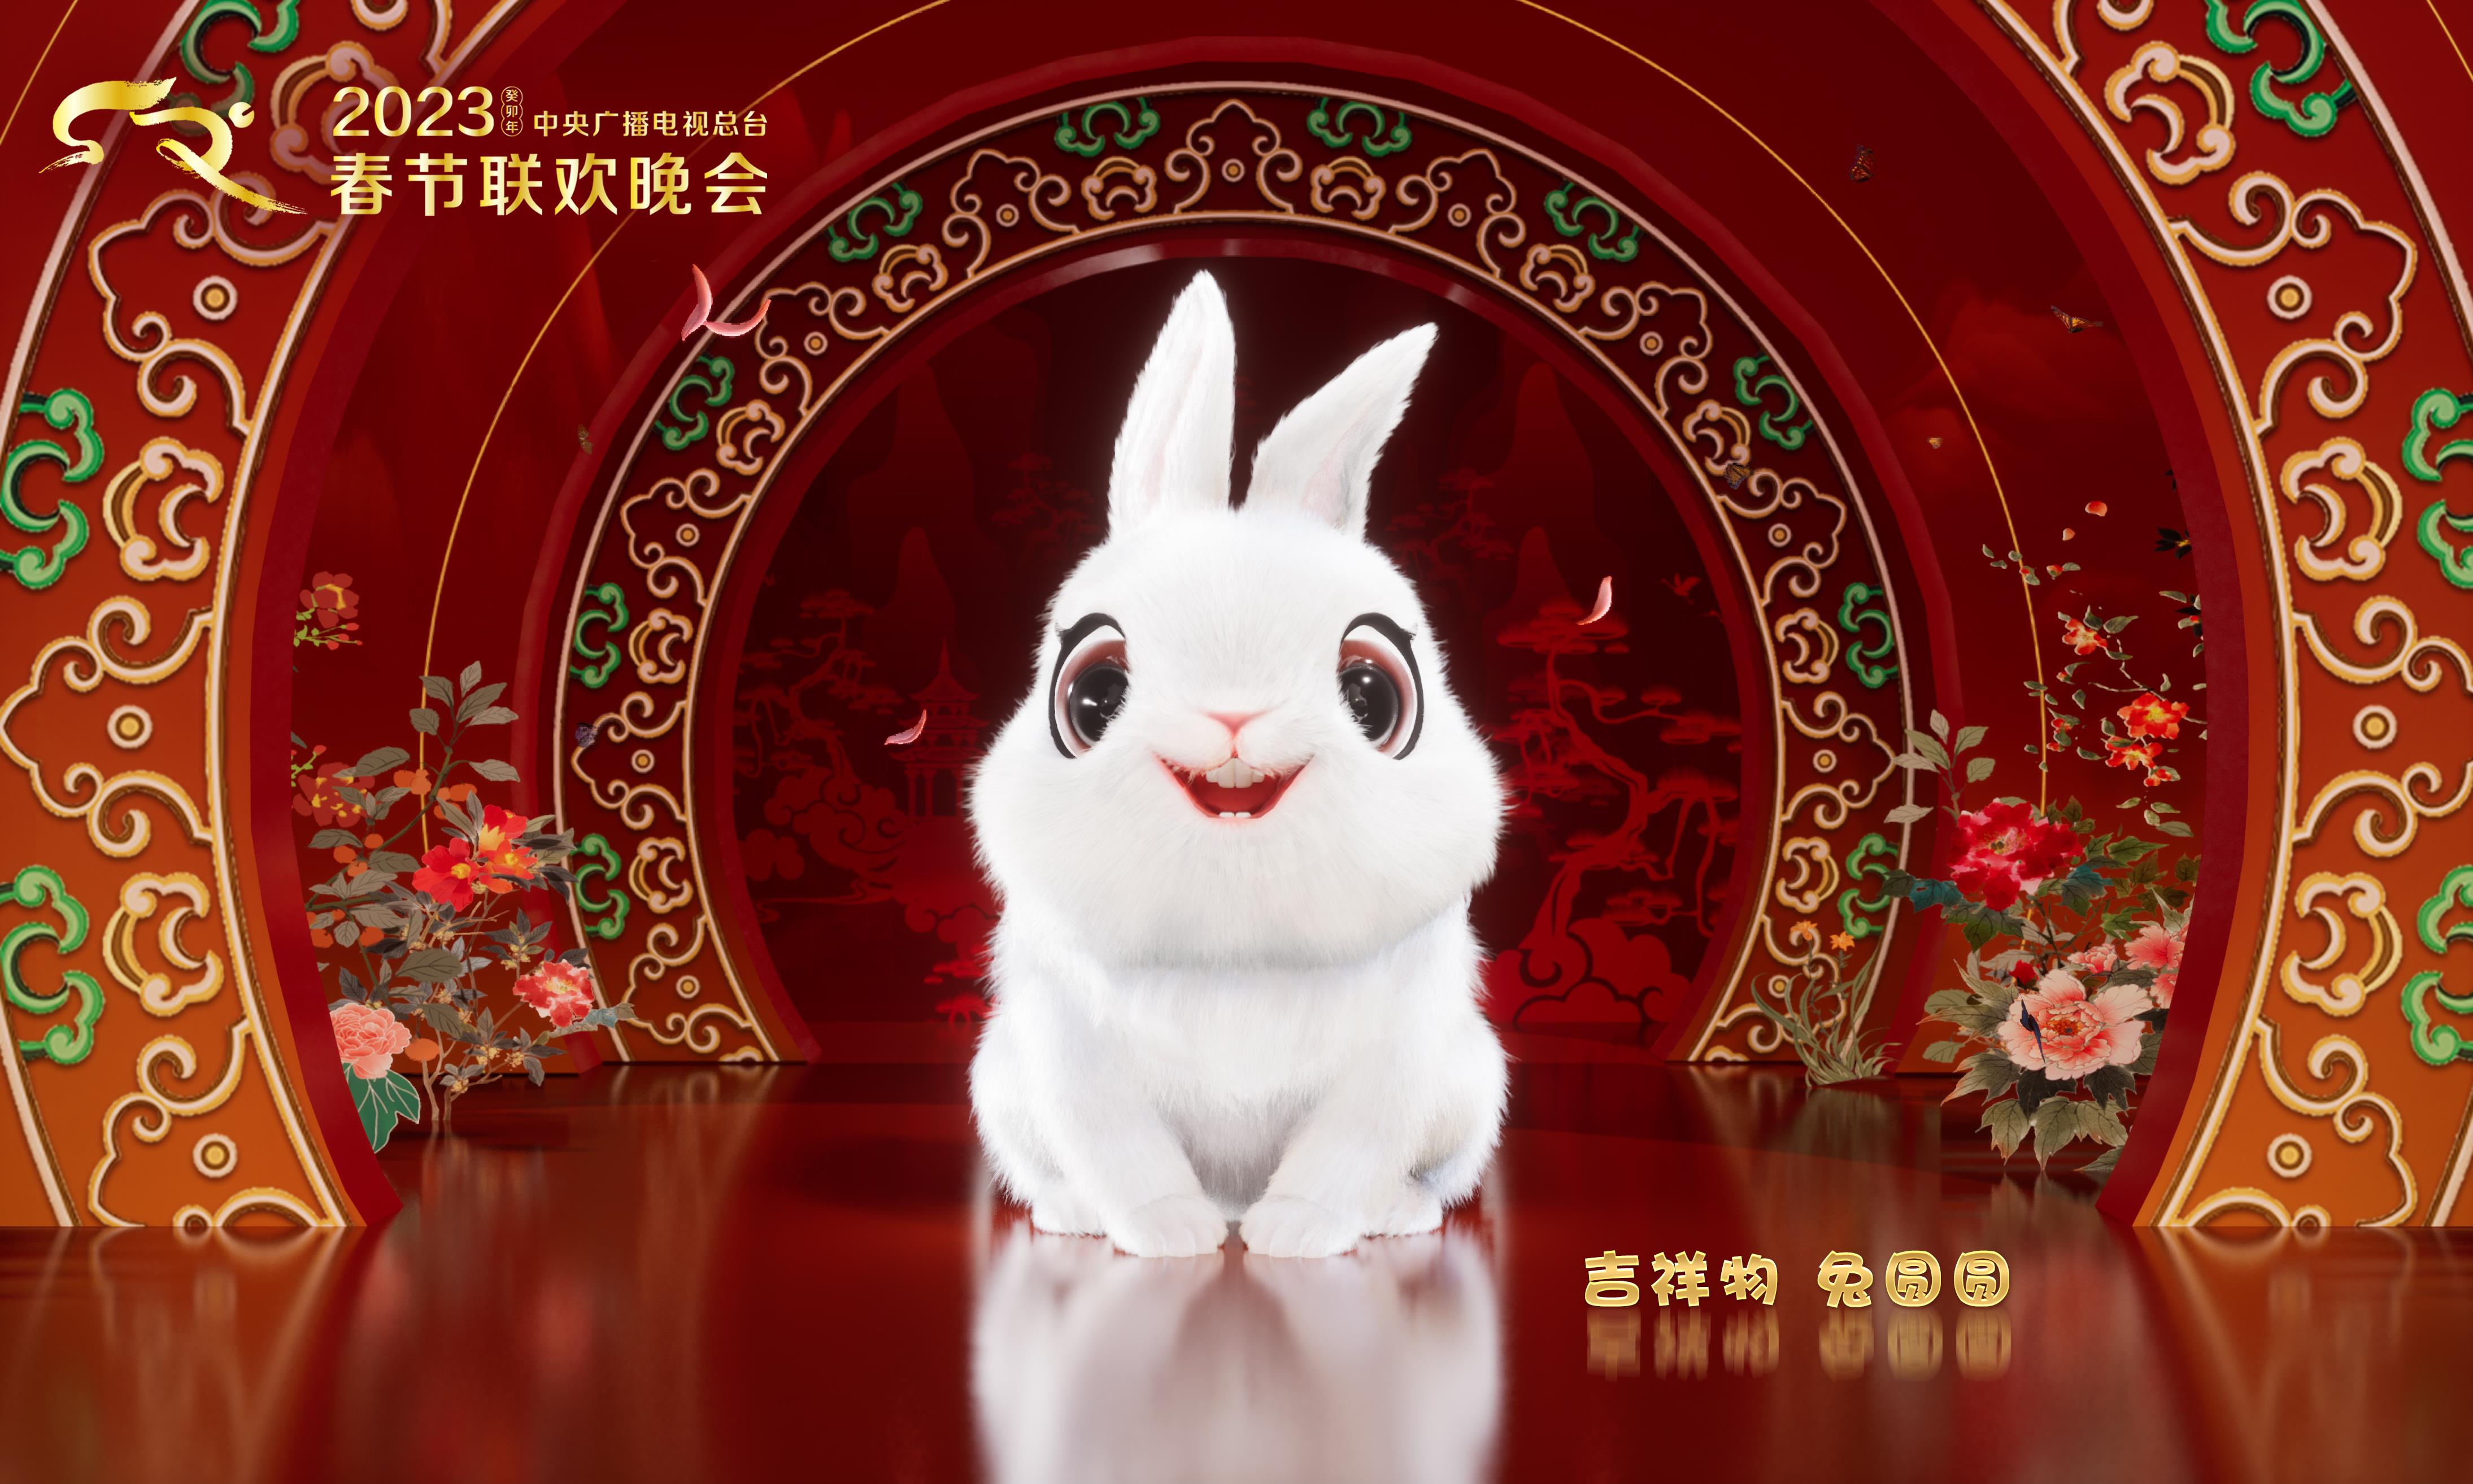 由陈湘波总设计，2023年央视总台春晚官方标识和吉祥物形象“兔圆圆”正式发布